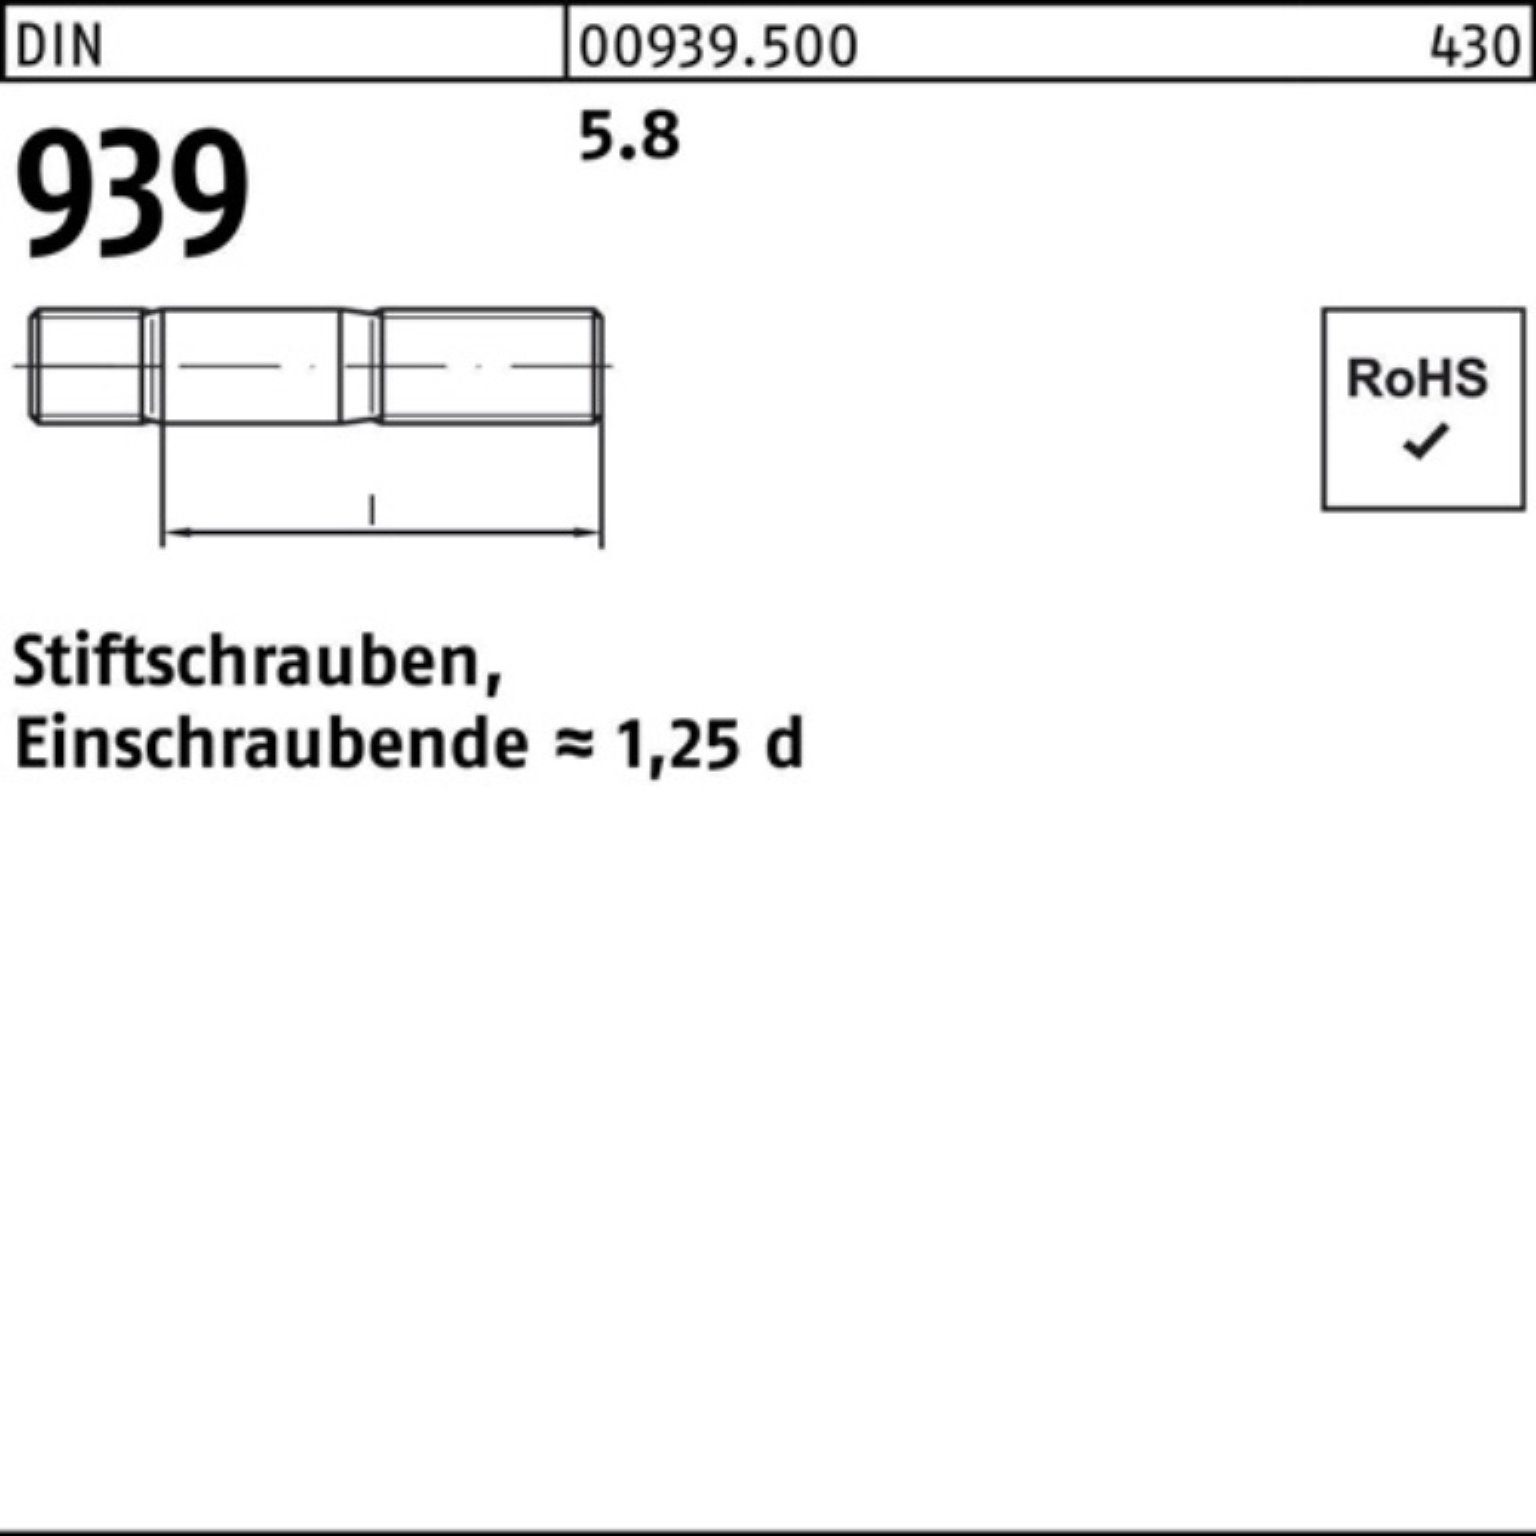 Reyher Stiftschraube 939 25 100er M12x Stiftschraube Pack Einschraubende=1,25d 5.8 120 DIN